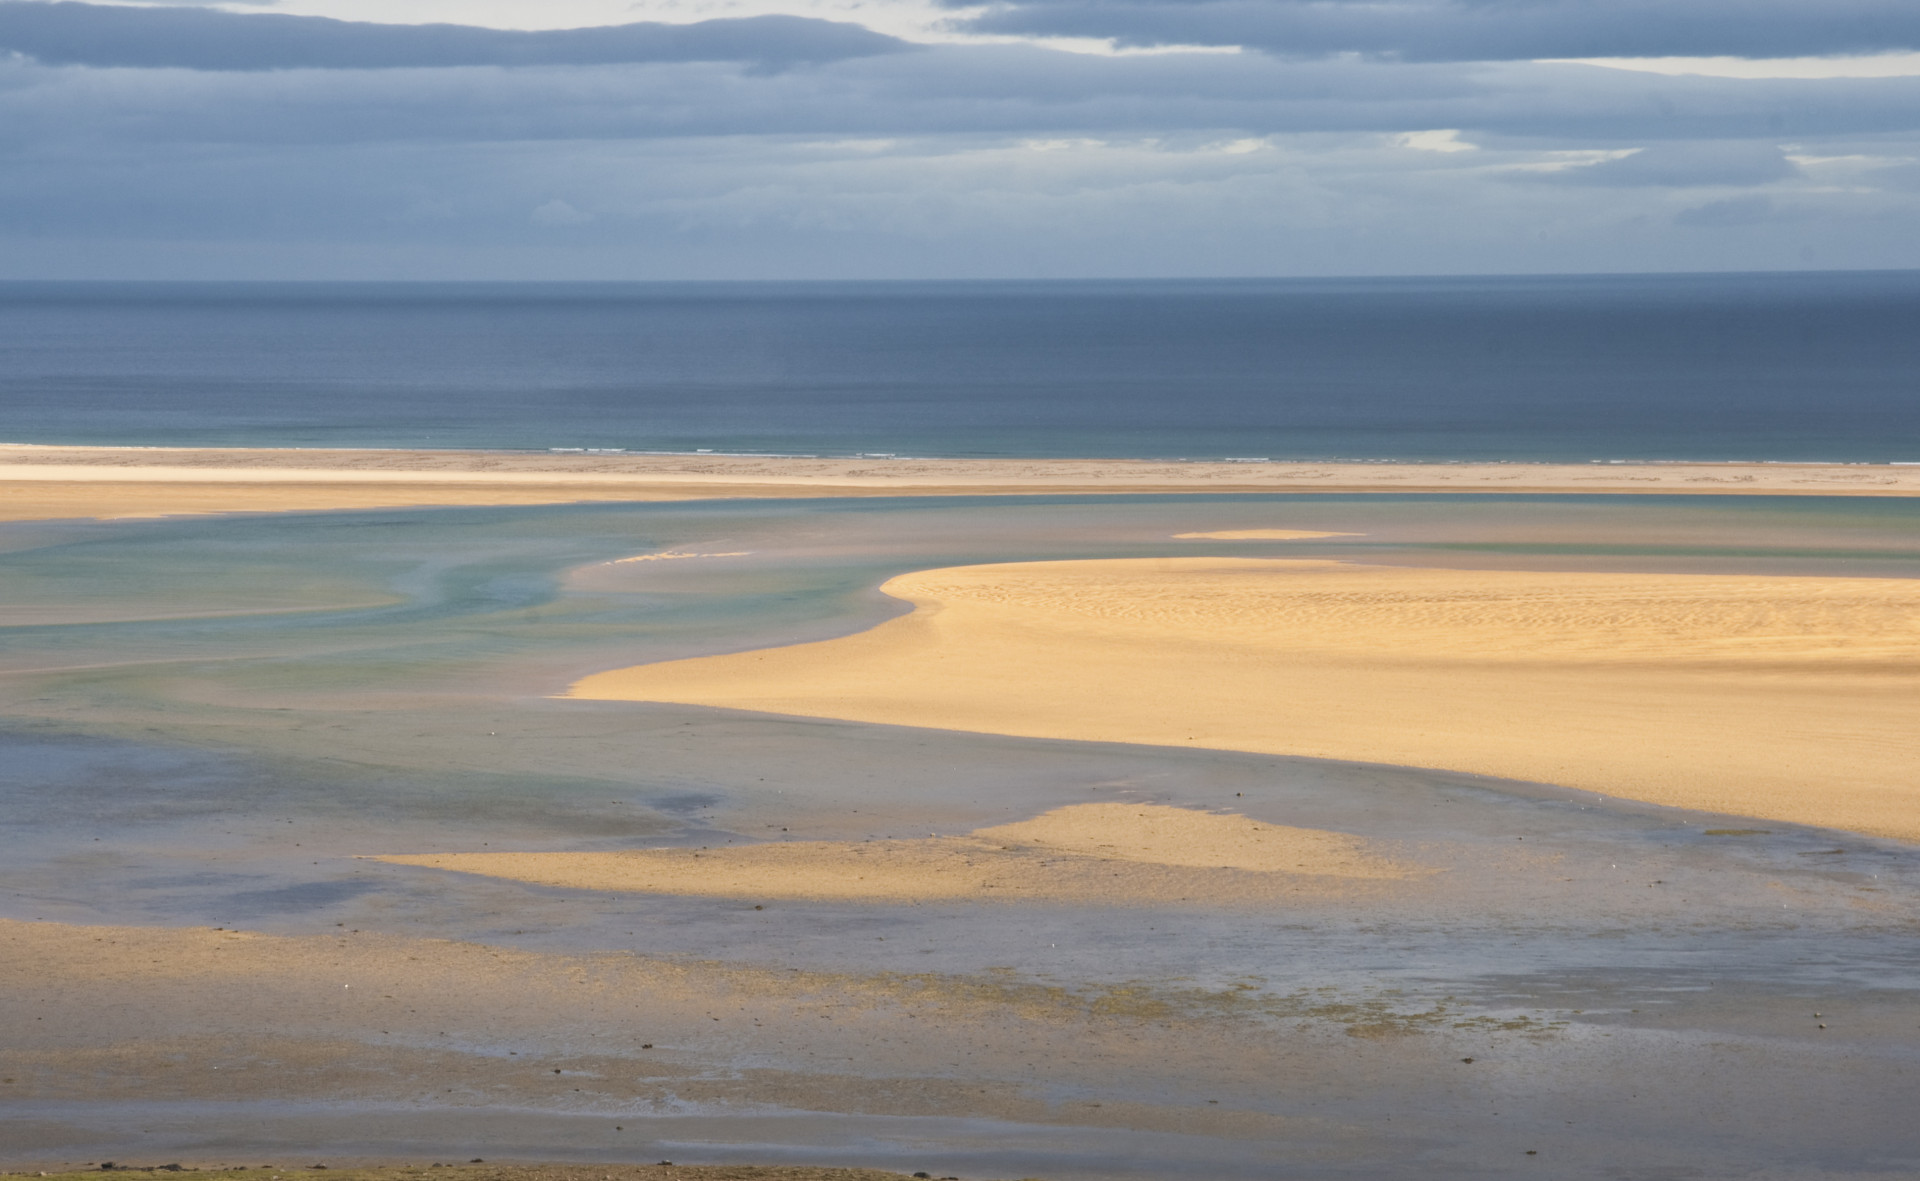 Toujours dans la région de Vestfirðir, découvrez la plage de Rauðasandur. En Irlande, elle est l'une des rares étendues de sable doré plutôt que noir.<p>Tu pourrais aussi aimer:<a href="https://www.starsinsider.com/n/389298?utm_source=msn.com&utm_medium=display&utm_campaign=referral_description&utm_content=277864v3"> Cessez de mettre ces aliments au frigo !</a></p>